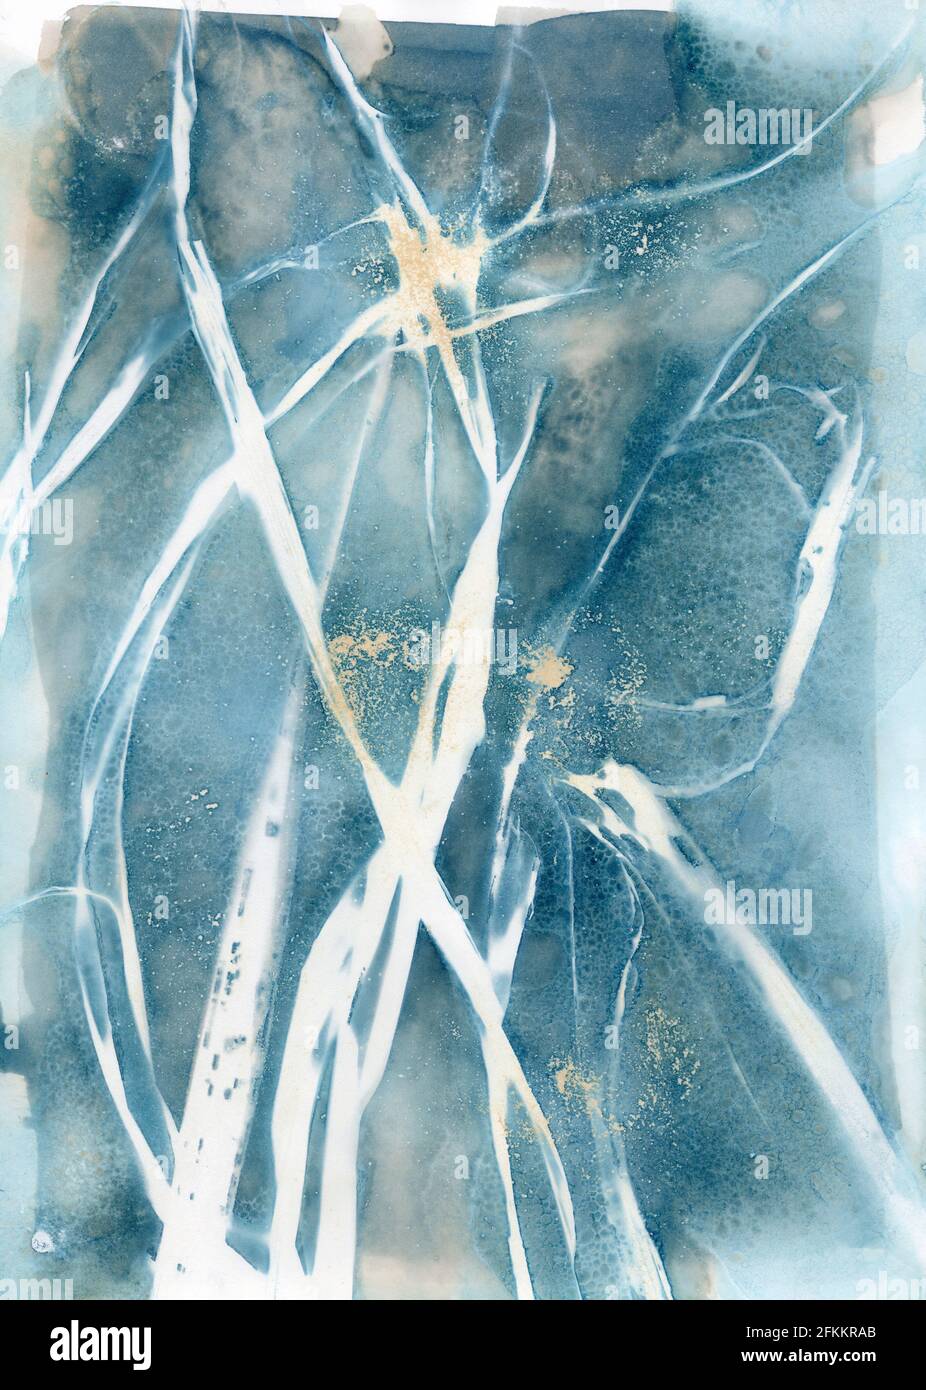 Le moderne immagini di cianotipo sole si stampano utilizzando il metodo del cianotipo umido, foglie di gladiola essiccate e curcuma Foto Stock